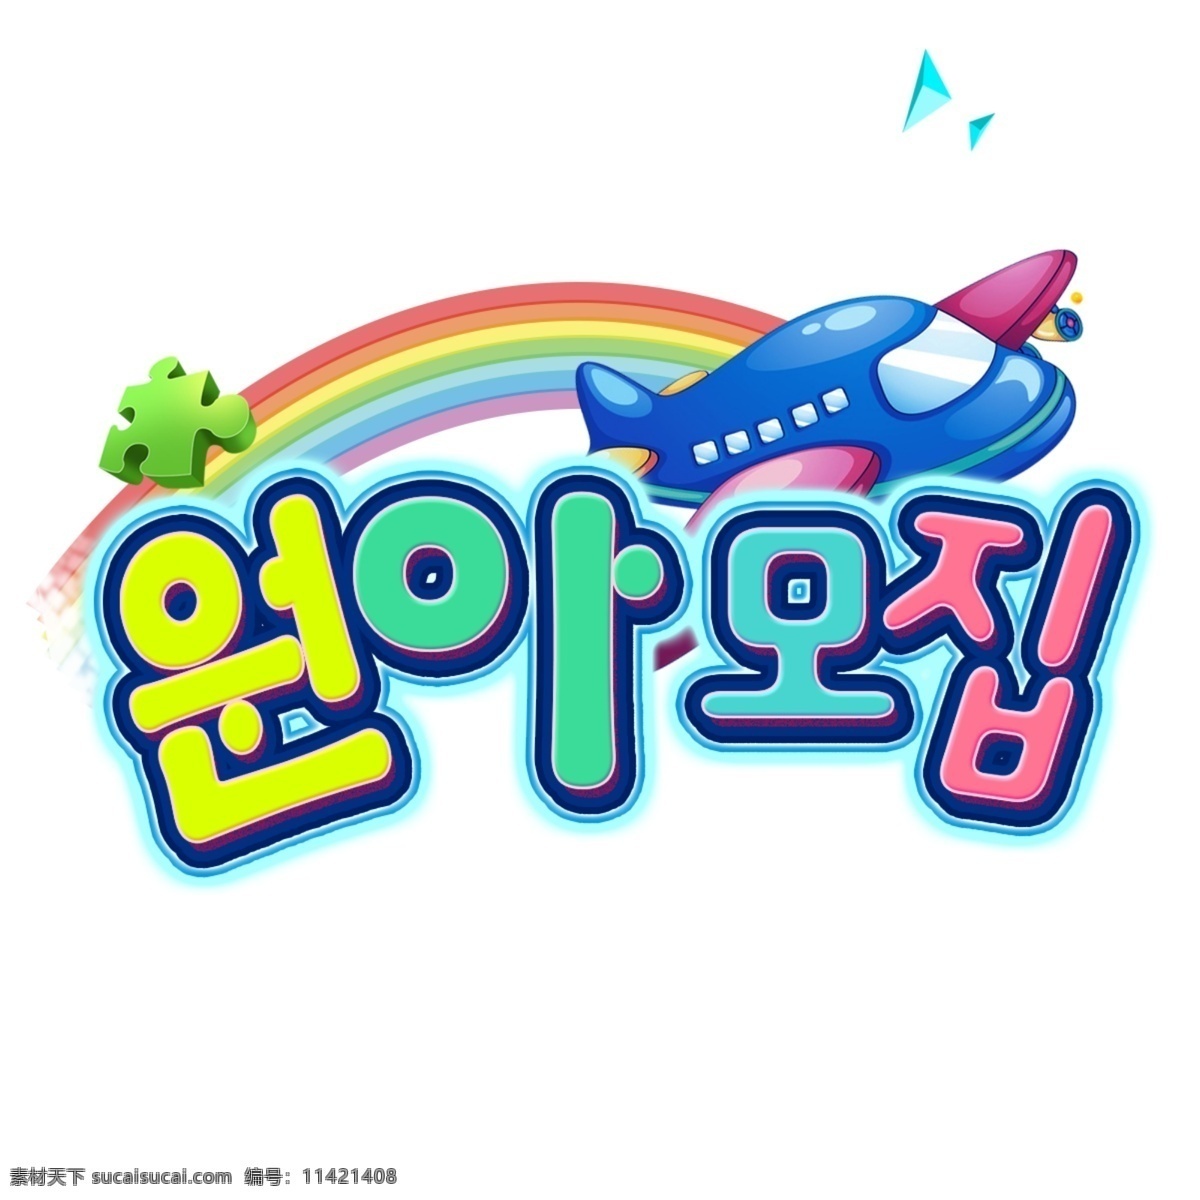 招募韩国人 字形 漂亮的字体 学校 招聘 幼儿园 卡通字体 元